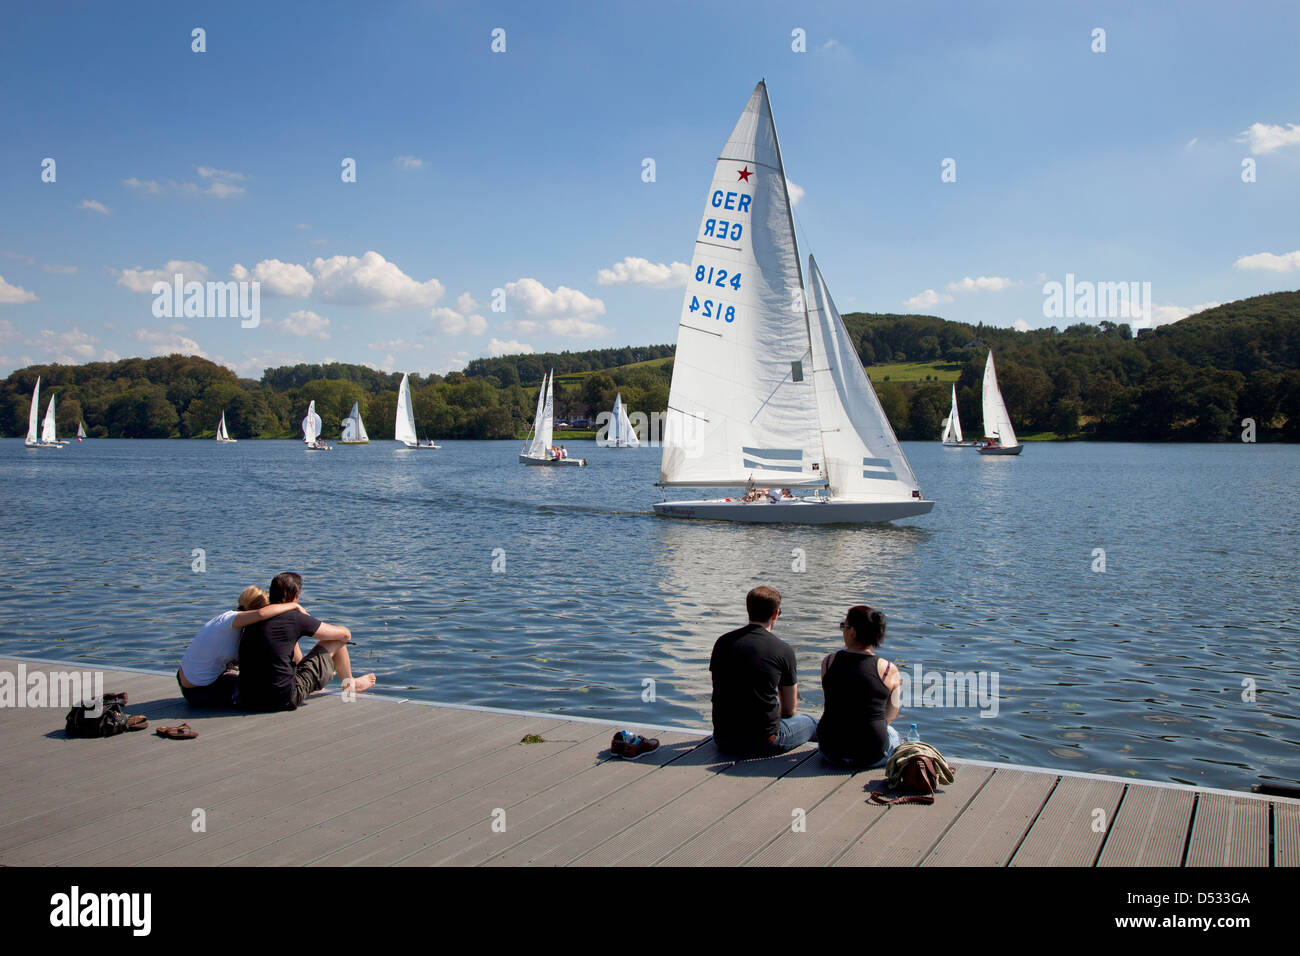 Essen, Germania, barche a vela sul lago Baldeneysee e persone al molo Foto Stock